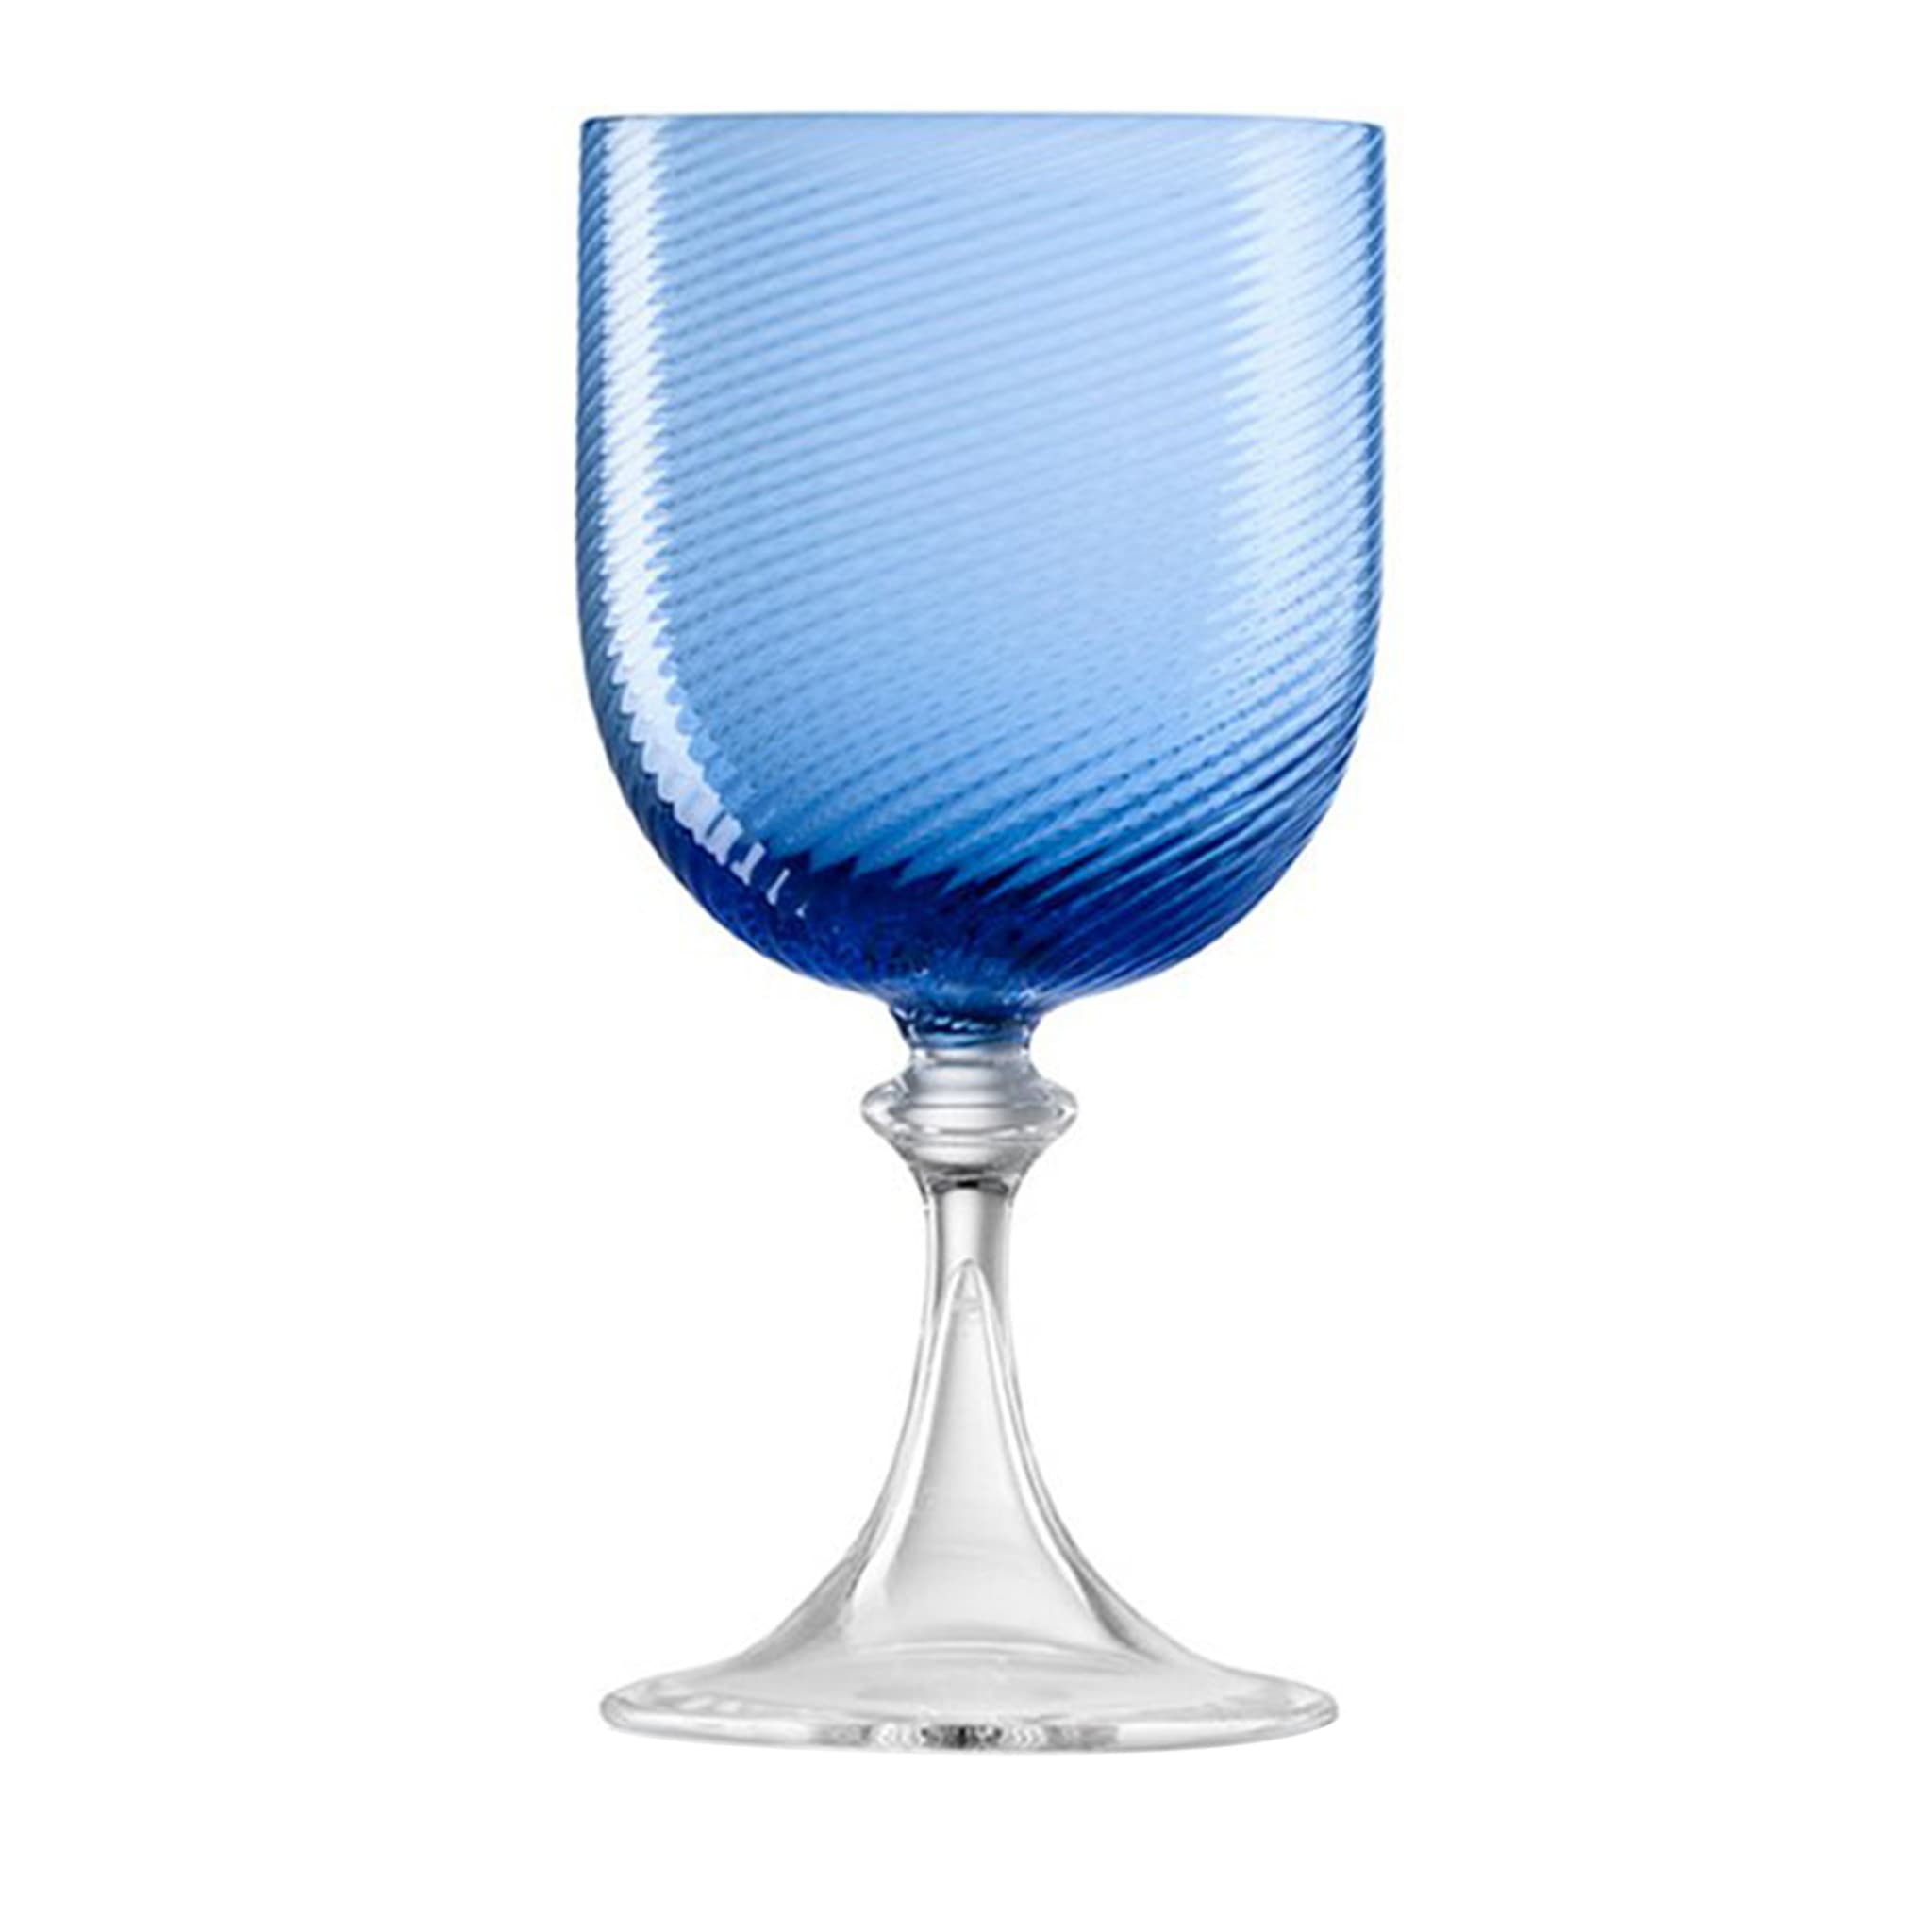 SET OF 6 BLUE MURANO WINE GLASSES - Main view